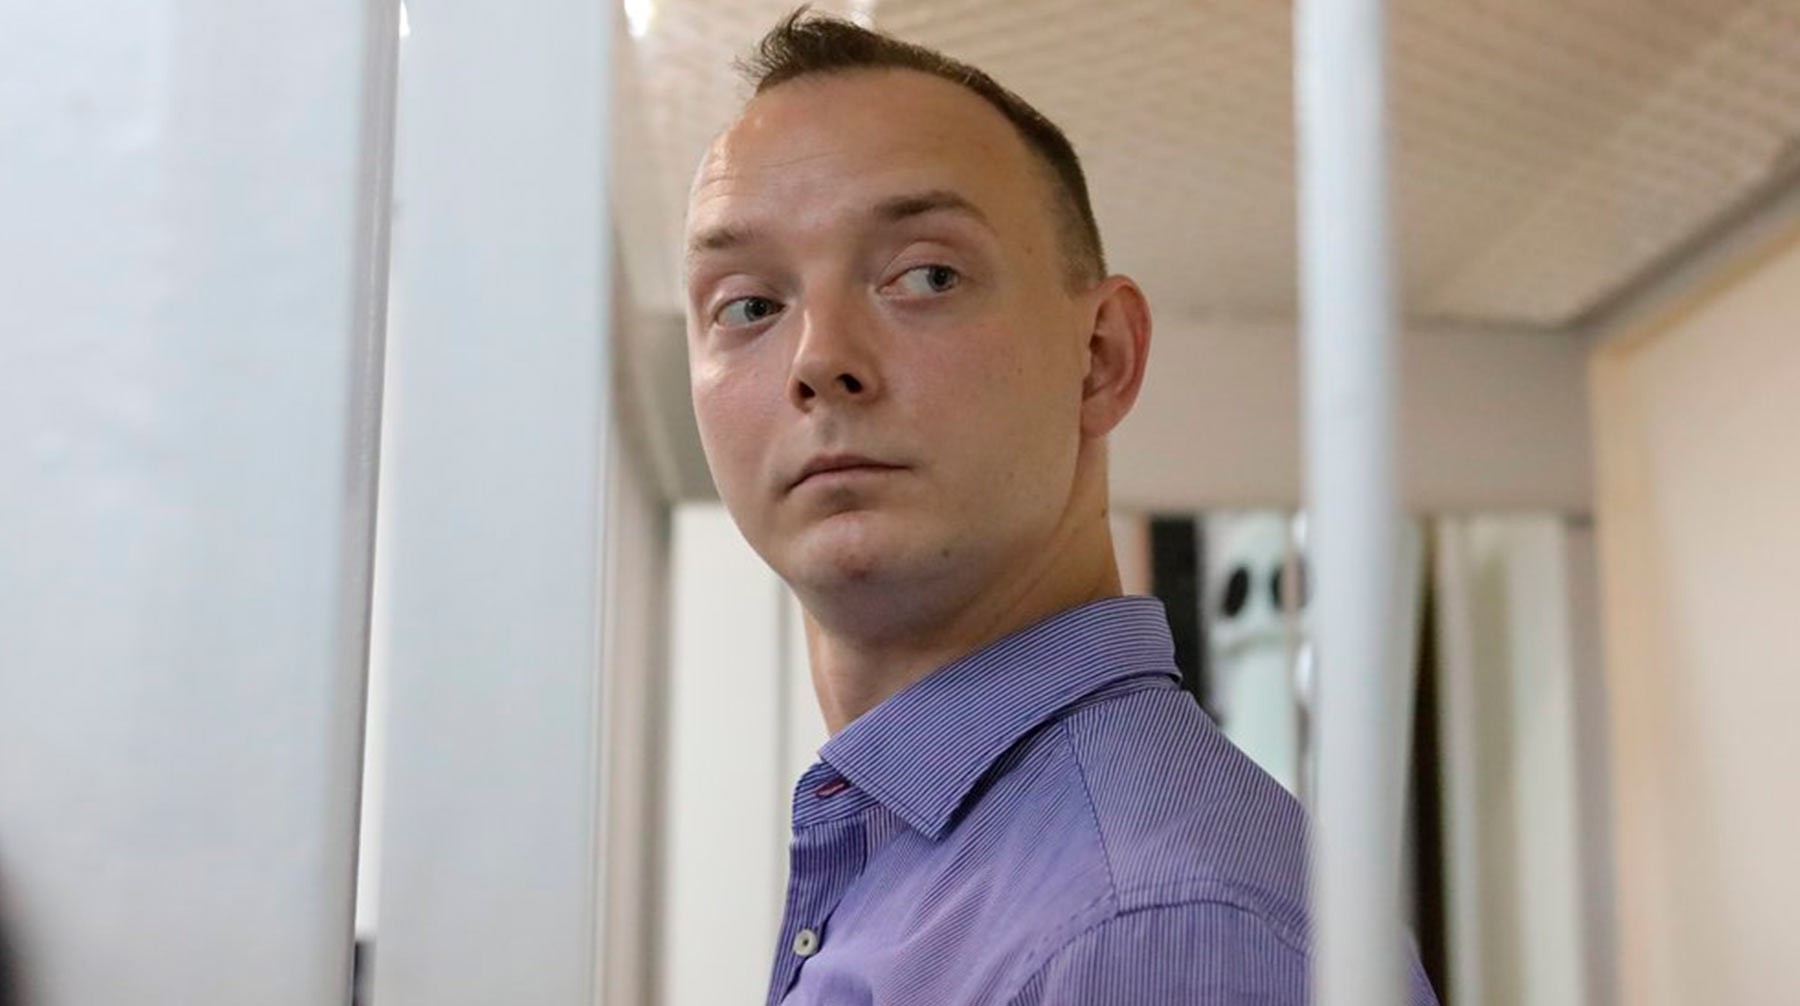 Dailystorm - В СВР заявили, что задержание Сафронова не связано с его профессиональной деятельностью